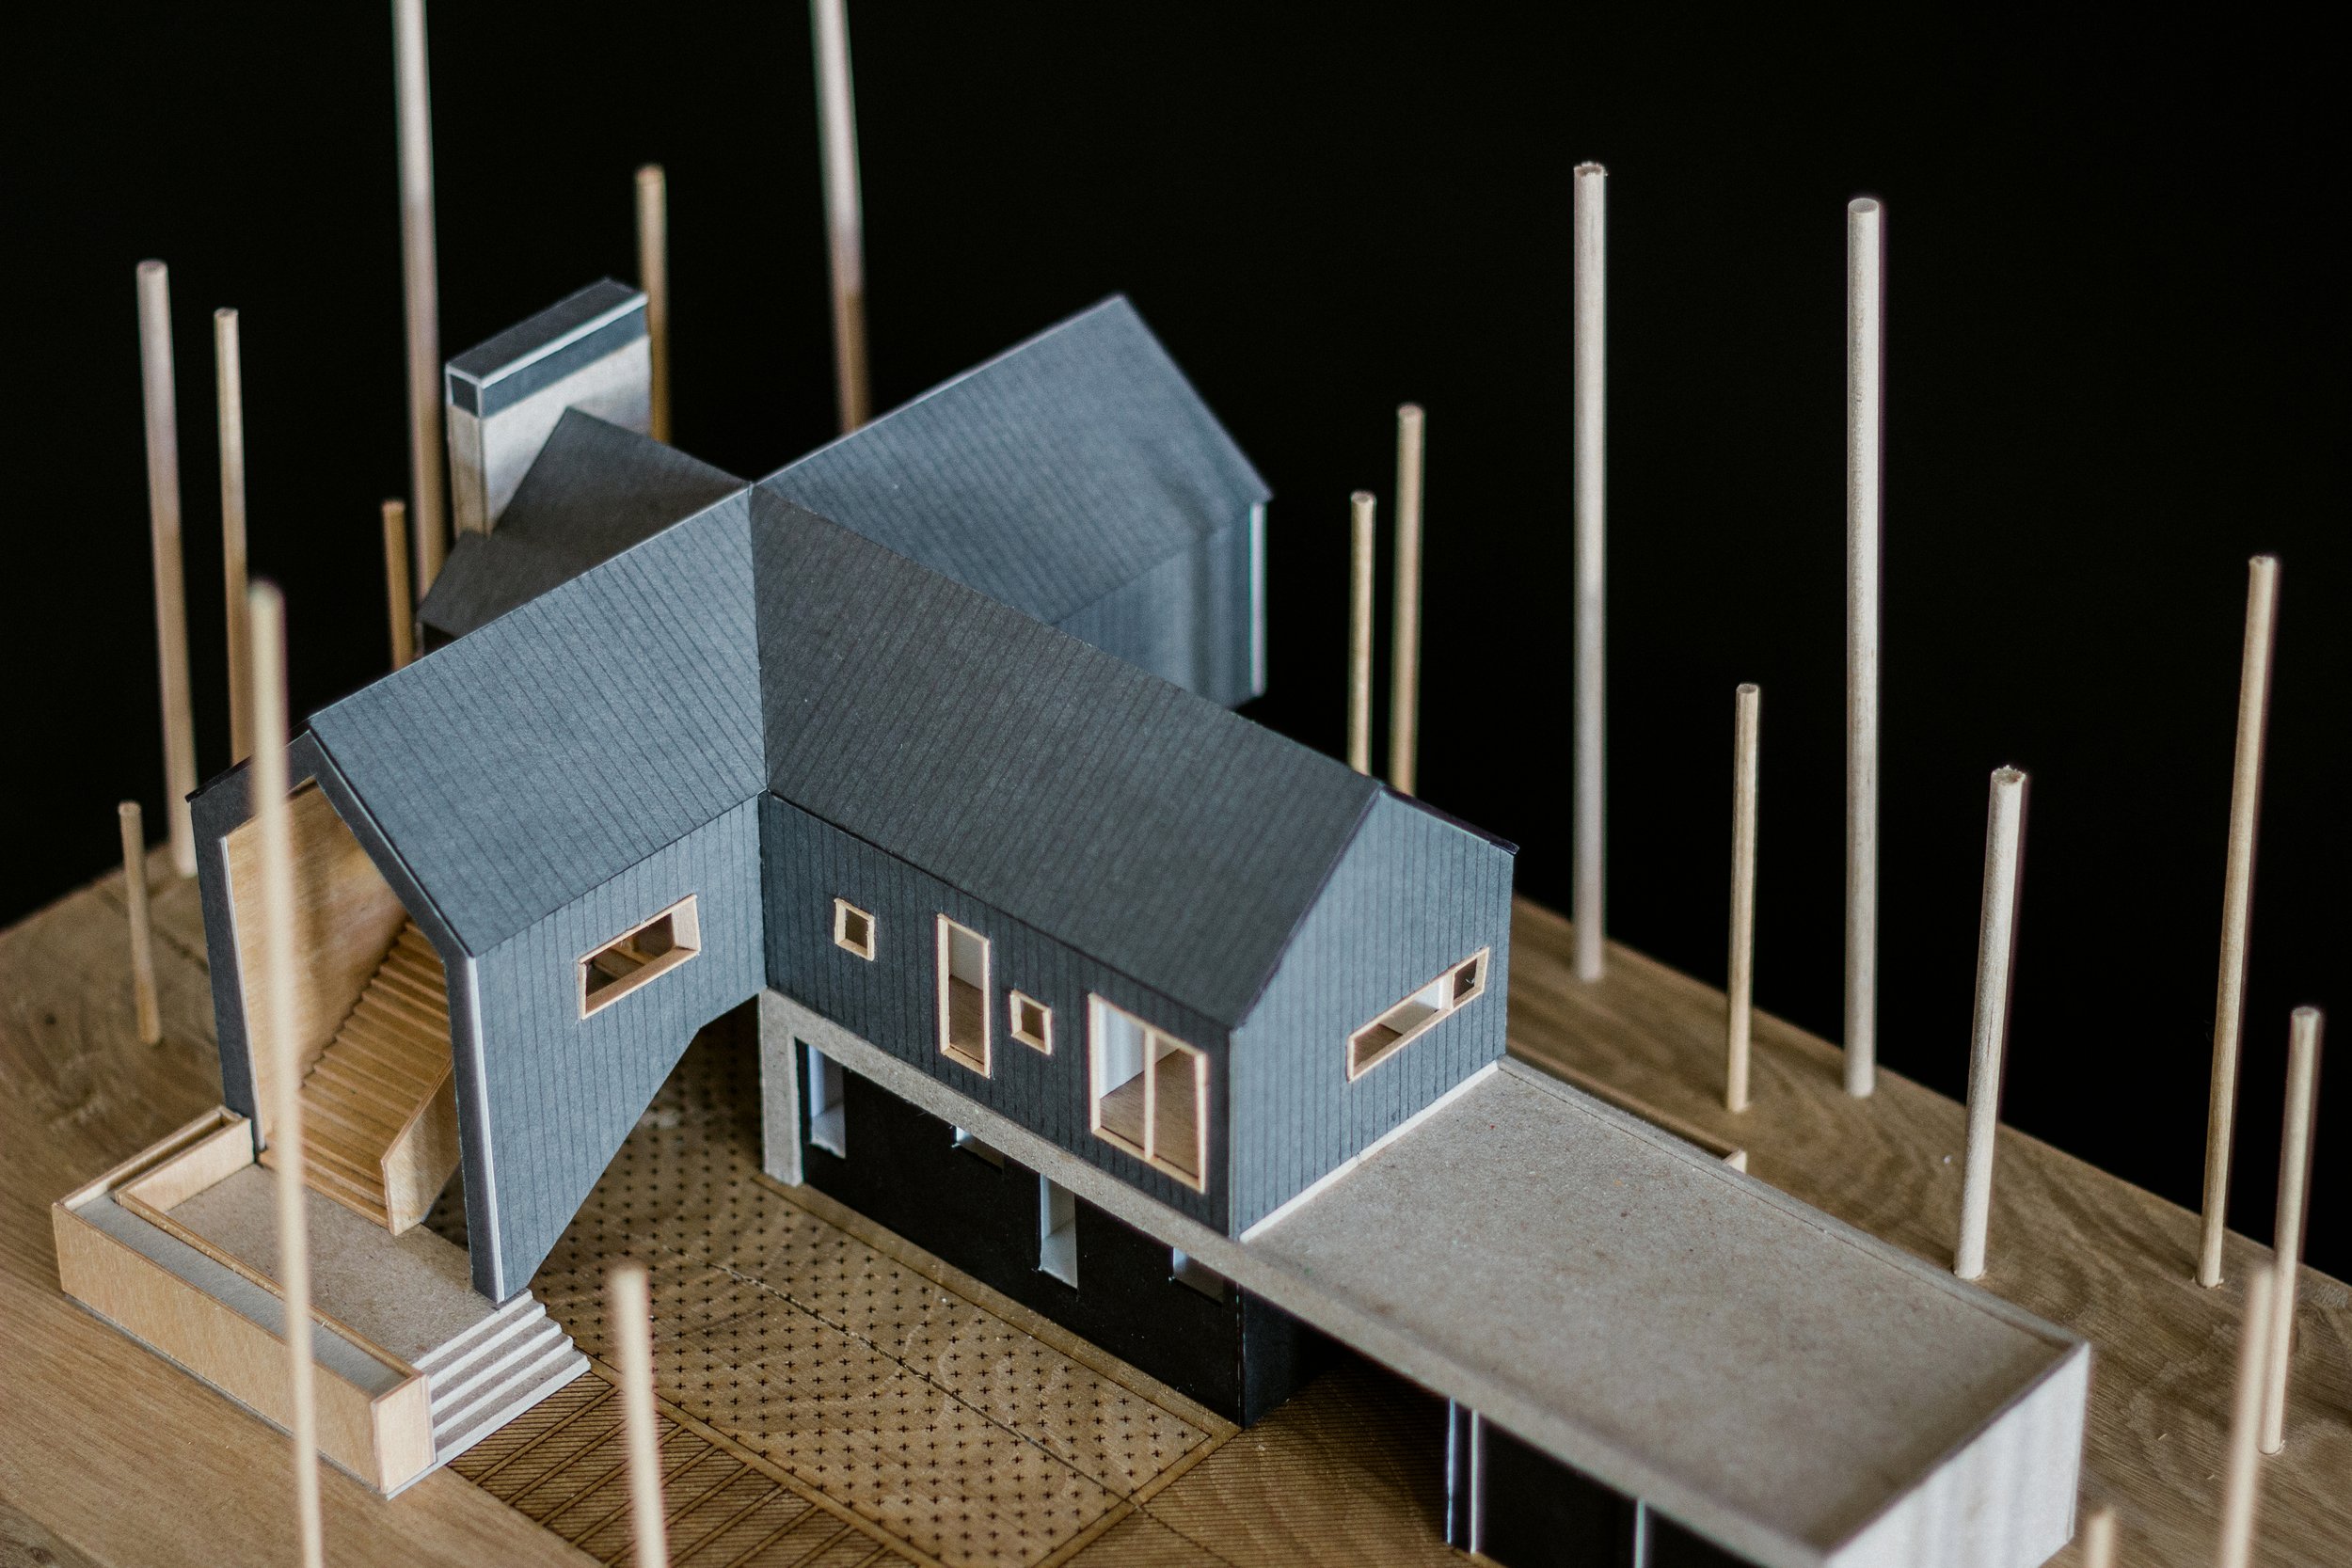 HI LO HOUSE MODEL 2 WHITEFISH ARCHITECT.jpg